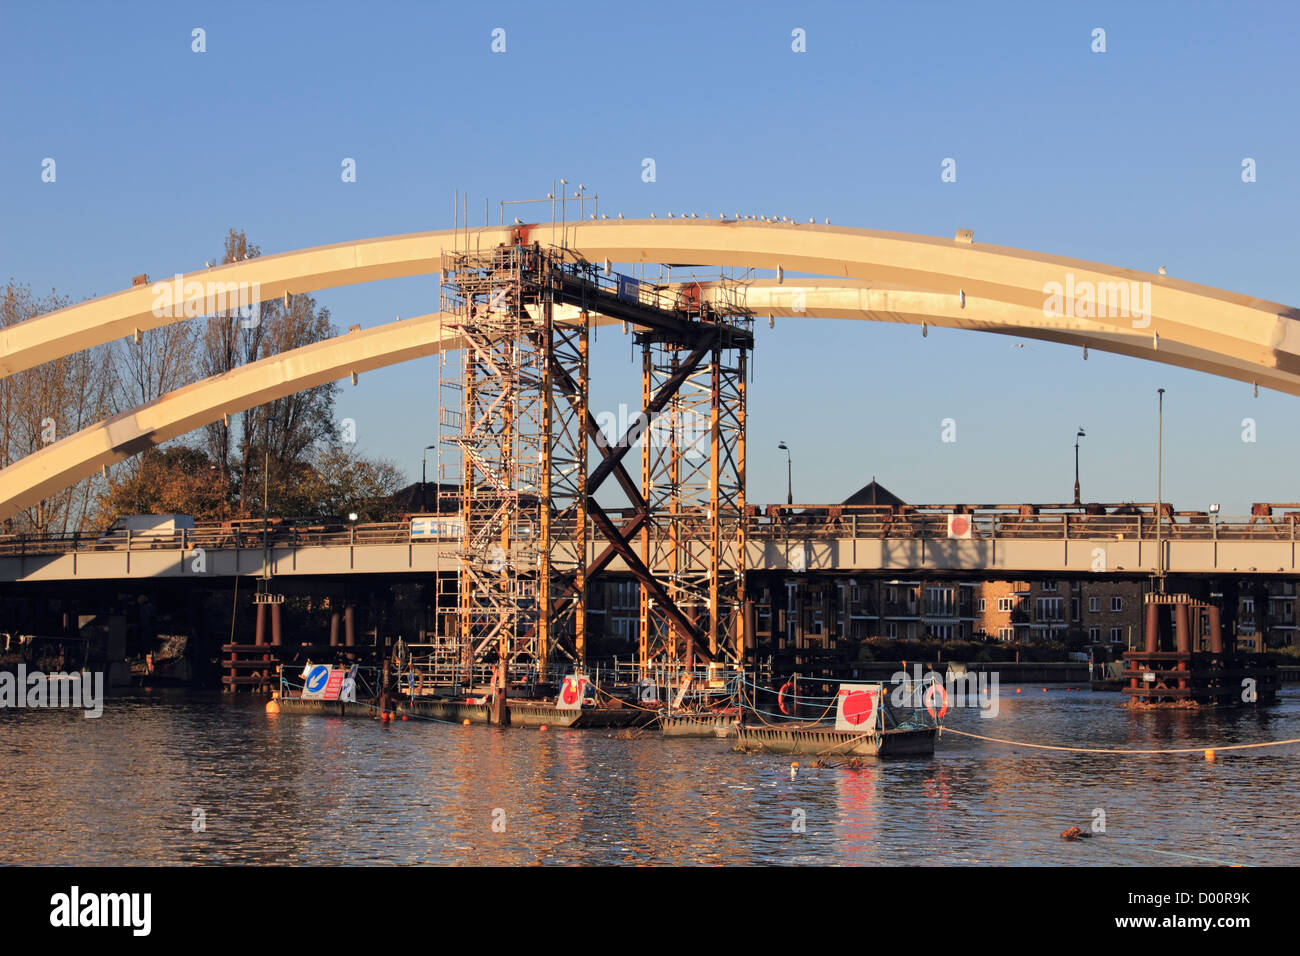 Die neue Brücke in Walton-on-Thames von Costain konstruiert. Der letzte Teil des Bogens wurde in Ort am 6. November 2012 reckte. Stockfoto